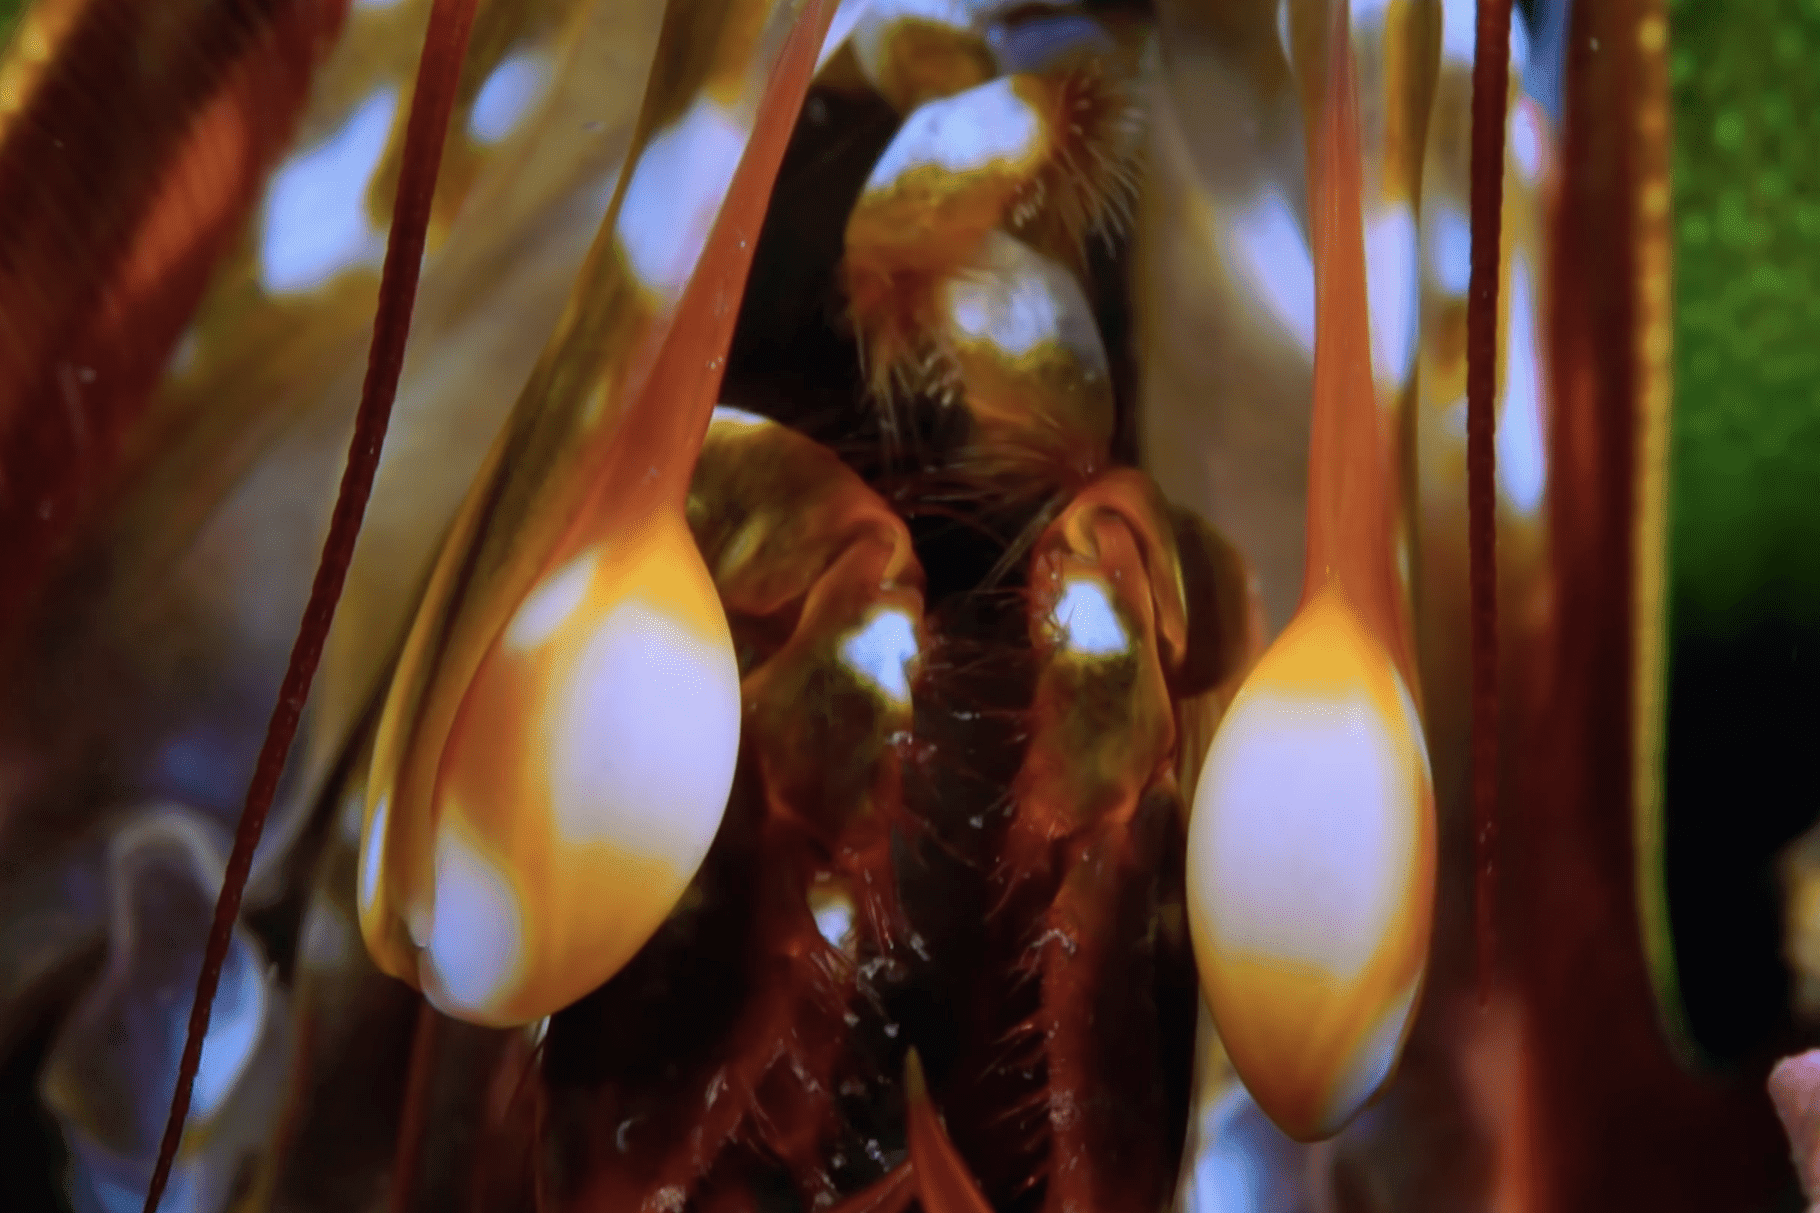 udang mantis